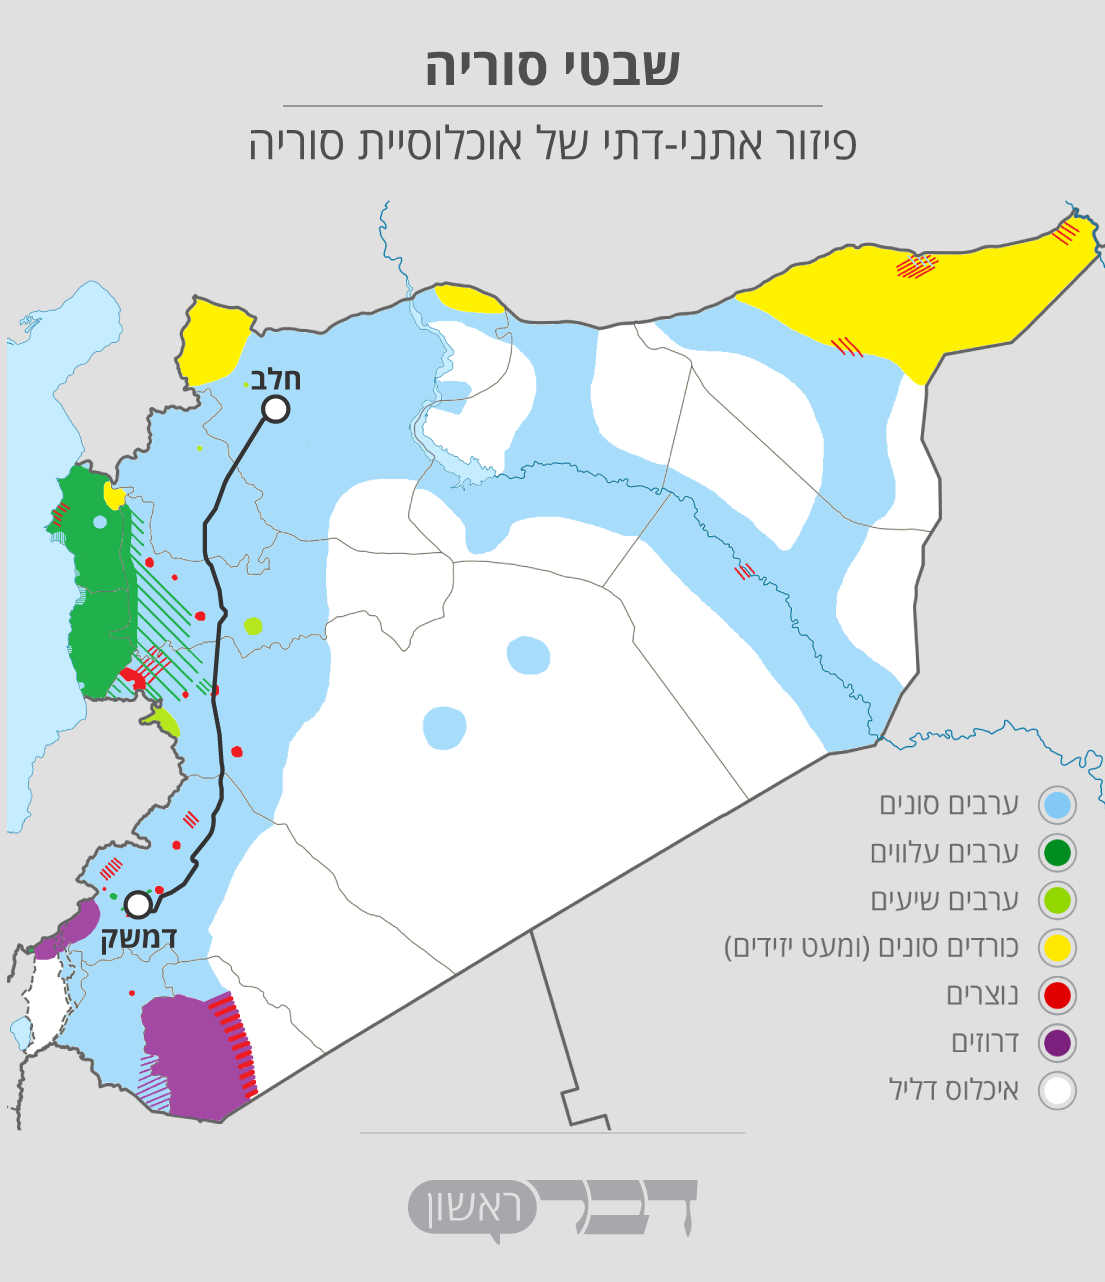 פיזור אתני-דתי של אוכלוסיית סוריה (גרפיקה: אידאה. נתונים: מתוך ויקיפדיה).